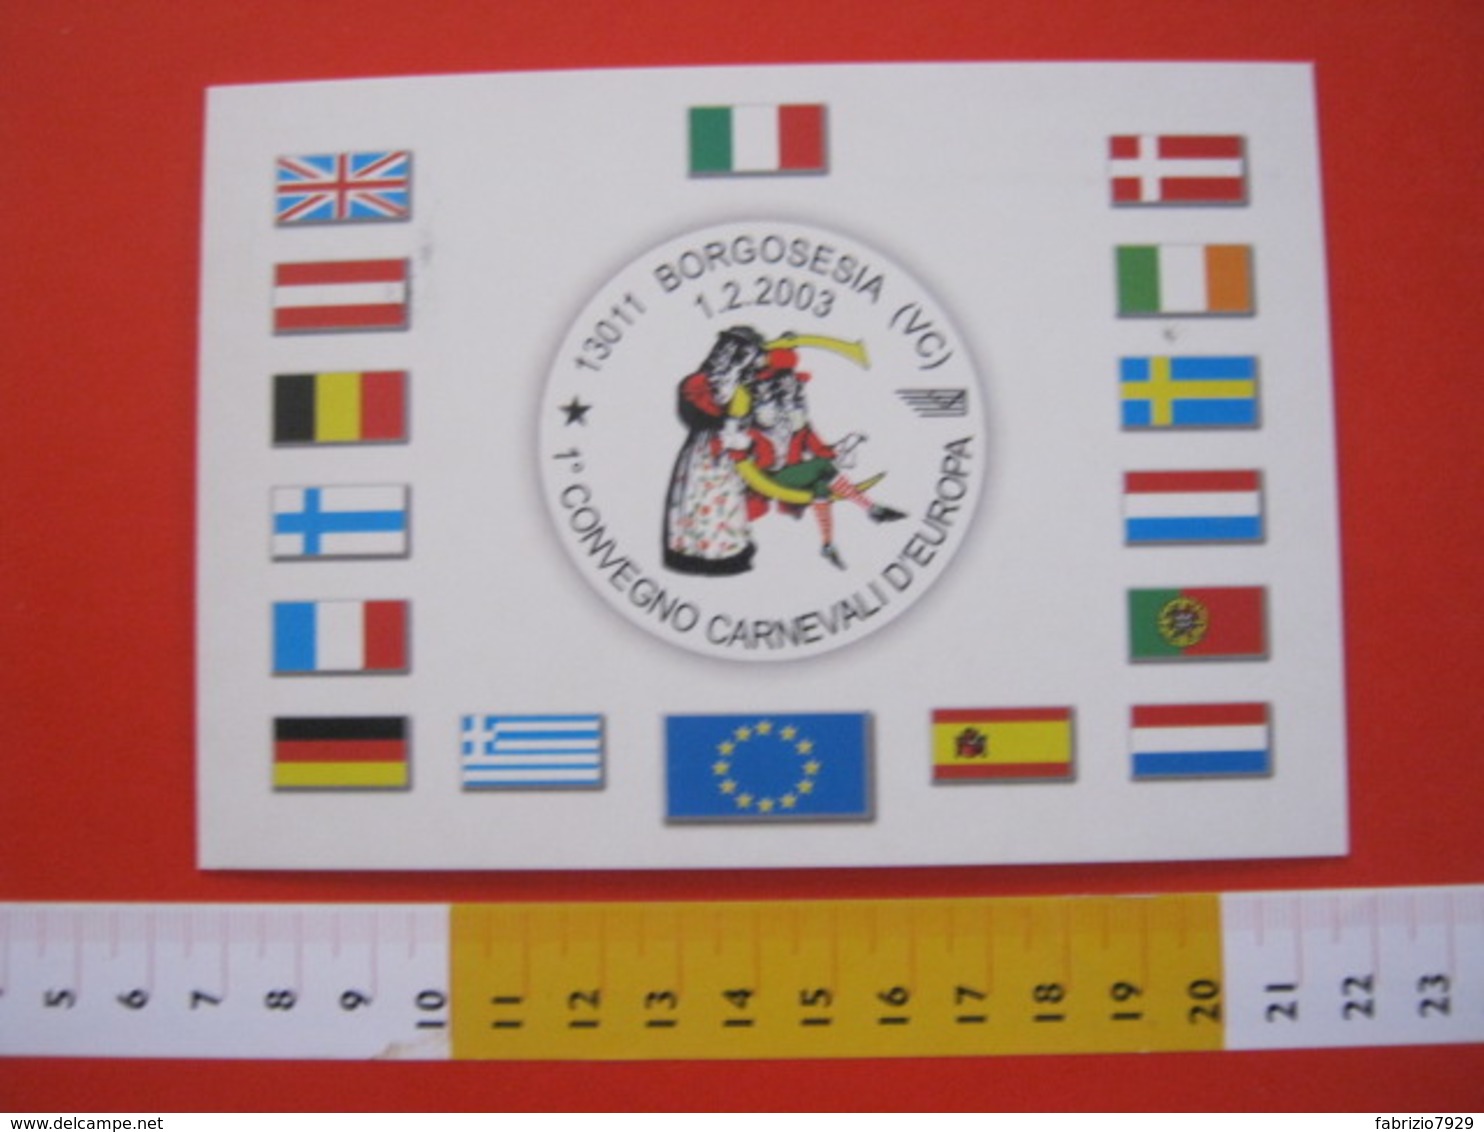 A.03 ITALIA ANNULLO - 2003 BORGOSESIA VERCELLI 1° CONVEGNO CARNEVALE D' EUROPA MASCHERE CARD BANDIERE EU - Carnevale